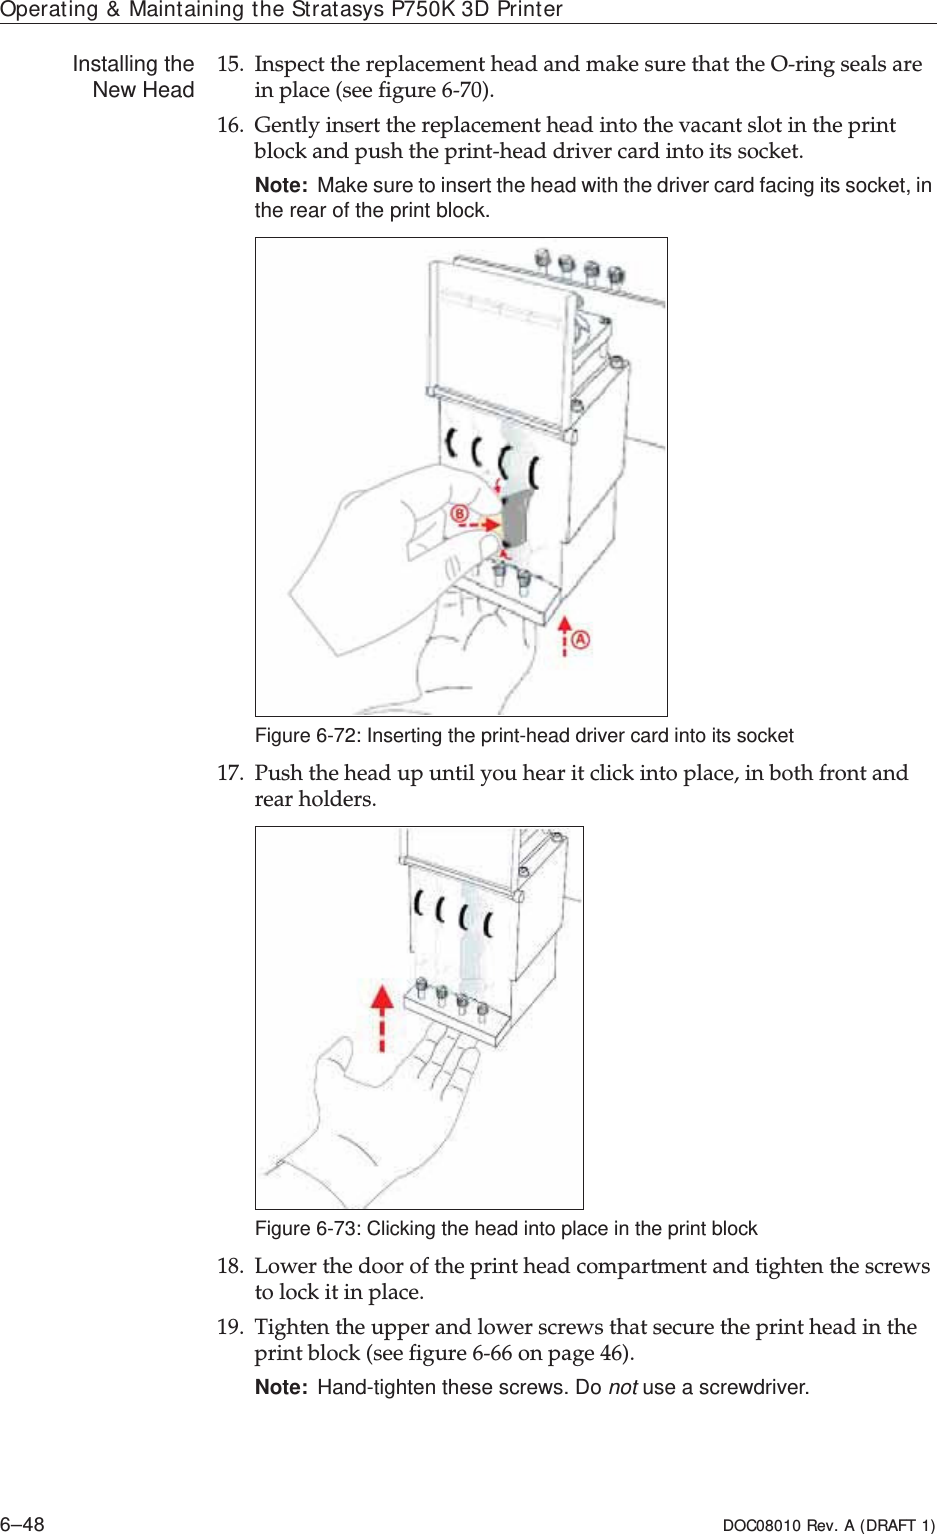 Operating &amp; Maintaining the Stratasys P750K 3D Printer6–48 DOC08010 Rev. A (DRAFT 1)Installing theNew Head 15. InspectȱtheȱreplacementȱheadȱandȱmakeȱsureȱthatȱtheȱOȬringȱsealsȱareȱinȱplaceȱ(seeȱfigure 6Ȭ70).16. GentlyȱinsertȱtheȱreplacementȱheadȱintoȱtheȱvacantȱslotȱinȱtheȱprintȱblockȱandȱpushȱtheȱprintȬheadȱdriverȱcardȱintoȱitsȱsocket.Note: Make sure to insert the head with the driver card facing its socket, in the rear of the print block.Figure 6-72: Inserting the print-head driver card into its socket17. Pushȱtheȱheadȱupȱuntilȱyouȱhearȱitȱclickȱintoȱplace,ȱinȱbothȱfrontȱandȱrearȱholders.Figure 6-73: Clicking the head into place in the print block18. Lowerȱtheȱdoorȱofȱtheȱprintȱheadȱcompartmentȱandȱtightenȱtheȱscrewsȱtoȱlockȱitȱinȱplace.19. Tightenȱtheȱupperȱandȱlowerȱscrewsȱthatȱsecureȱtheȱprintȱheadȱinȱtheȱprintȱblockȱ(seeȱfigure 6Ȭ66ȱonȱpage 46).Note: Hand-tighten these screws. Do not use a screwdriver.